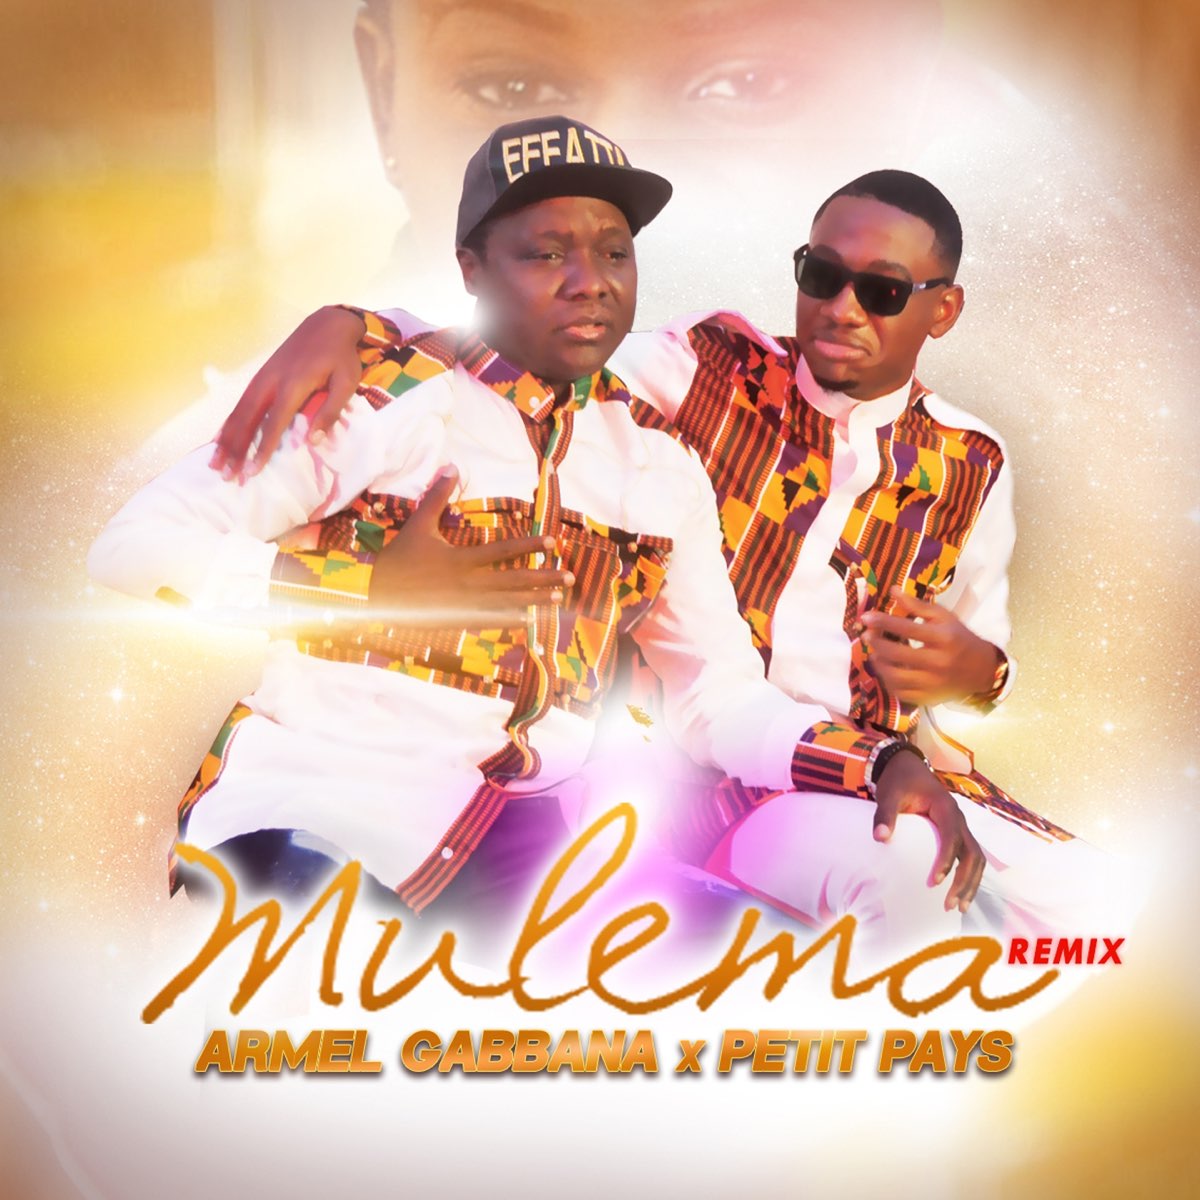 Mulema (feat. Petit Pays) [Remix] - Single by Armel Gabbana on Apple Music